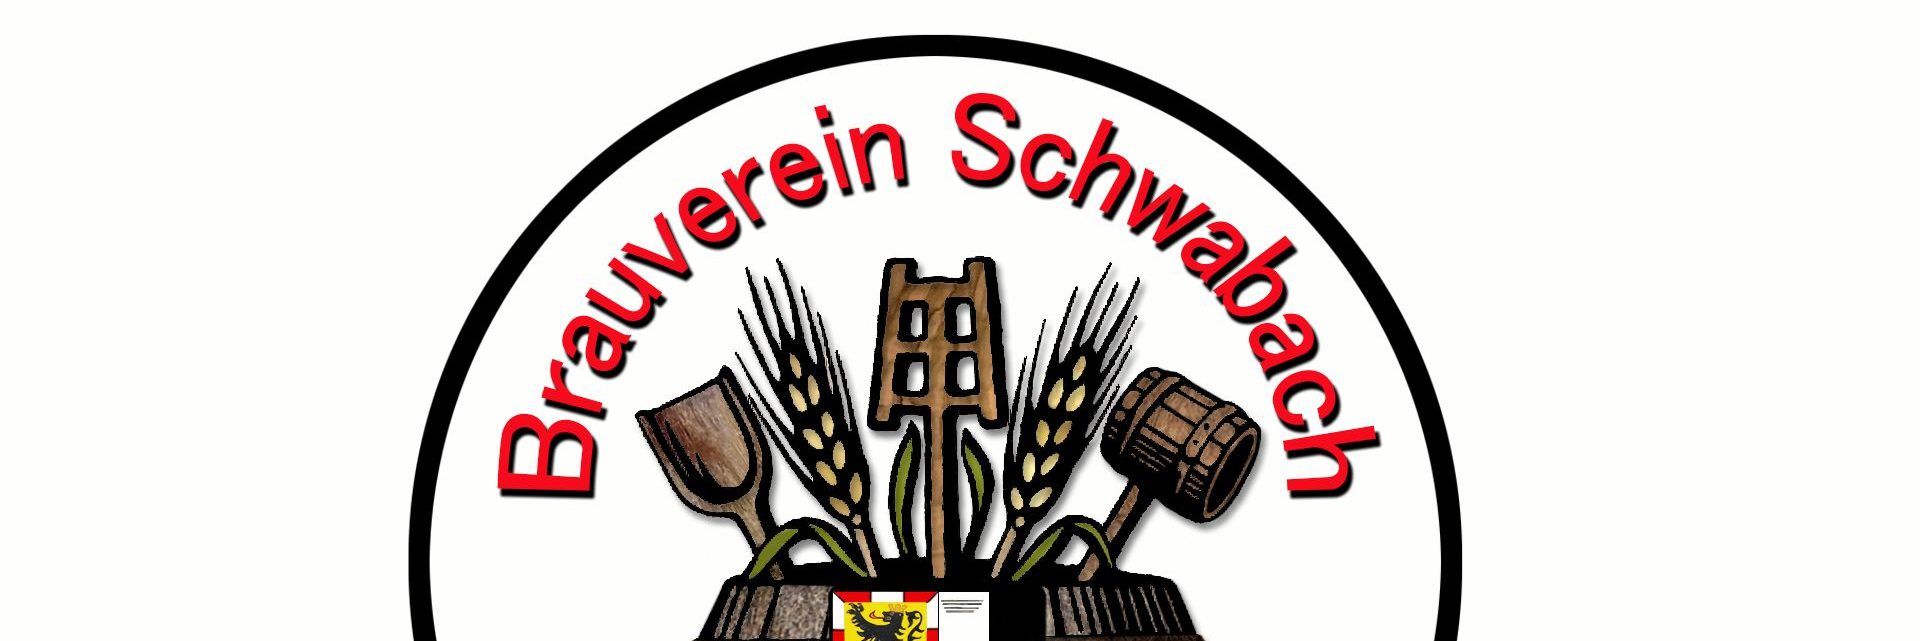 Brauverein Schwabach